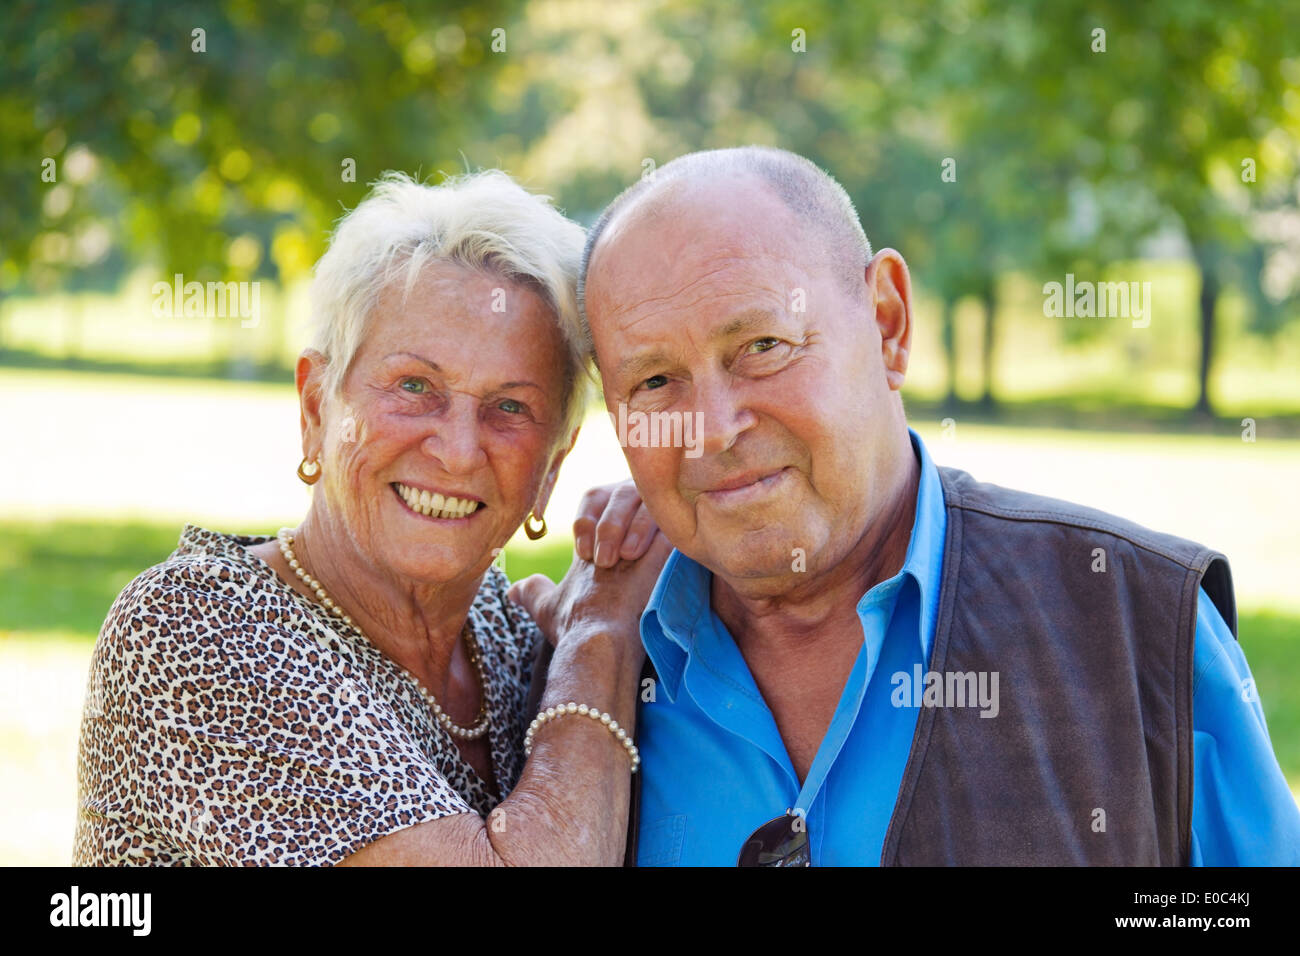 older senior citizens married couple are in love. Portrait of a pair, aelteres Senioren Ehepaar ist verliebt. Portraet eines Paa Stock Photo